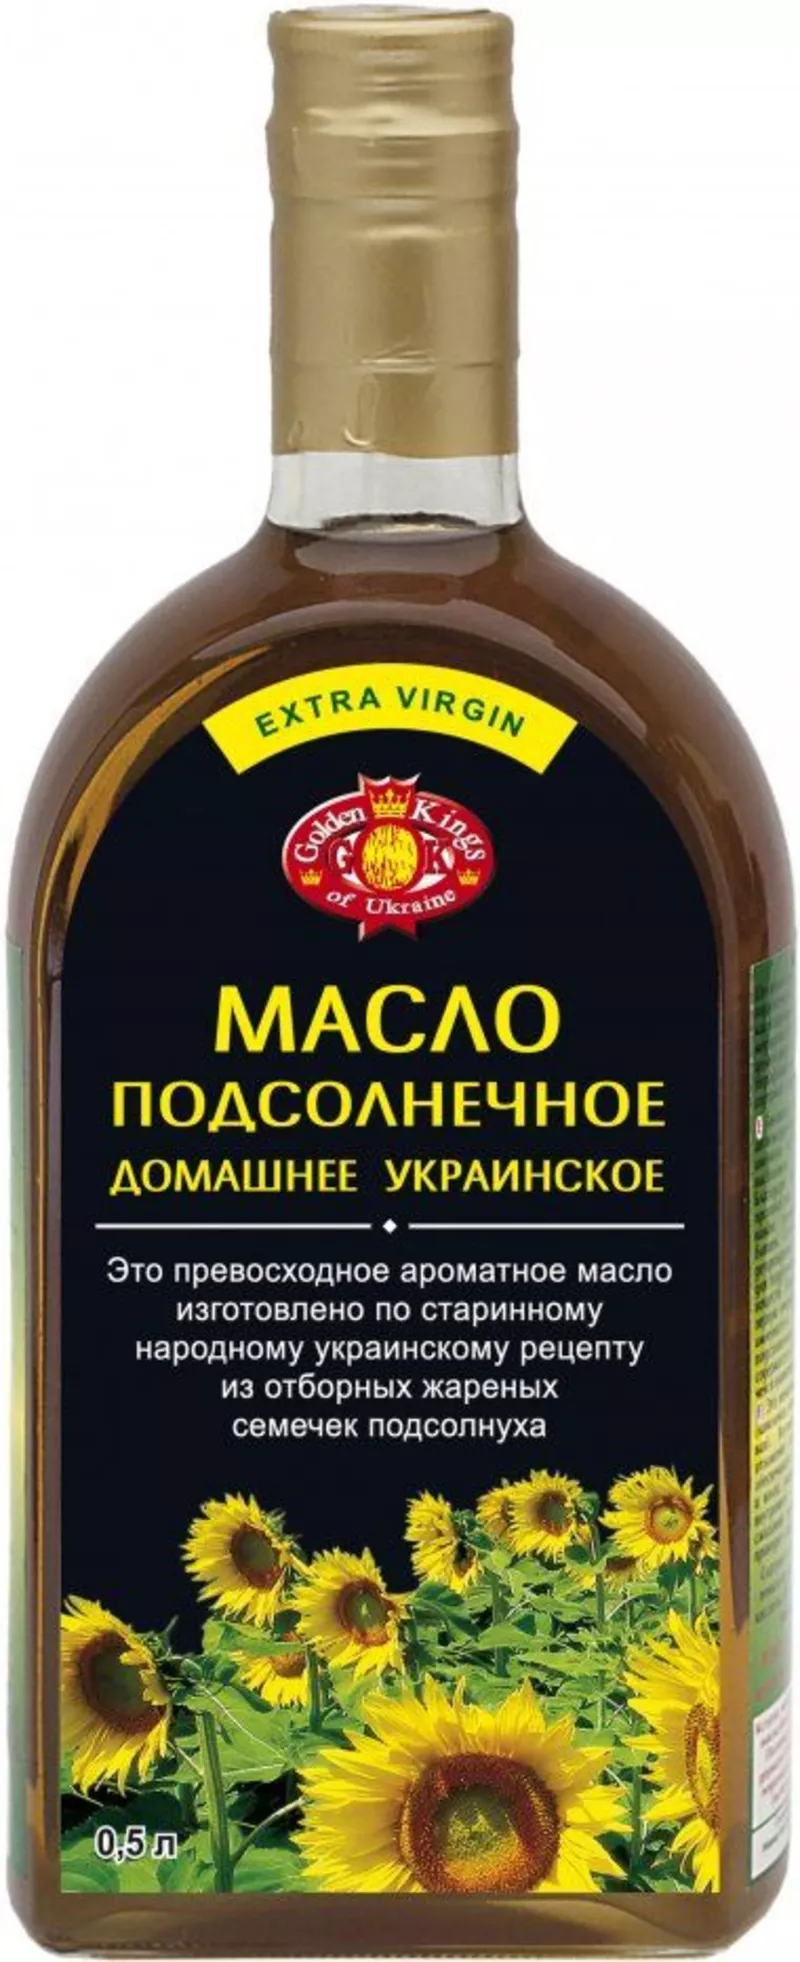 Продам масла растительные не рафинированные в ассортименте  2